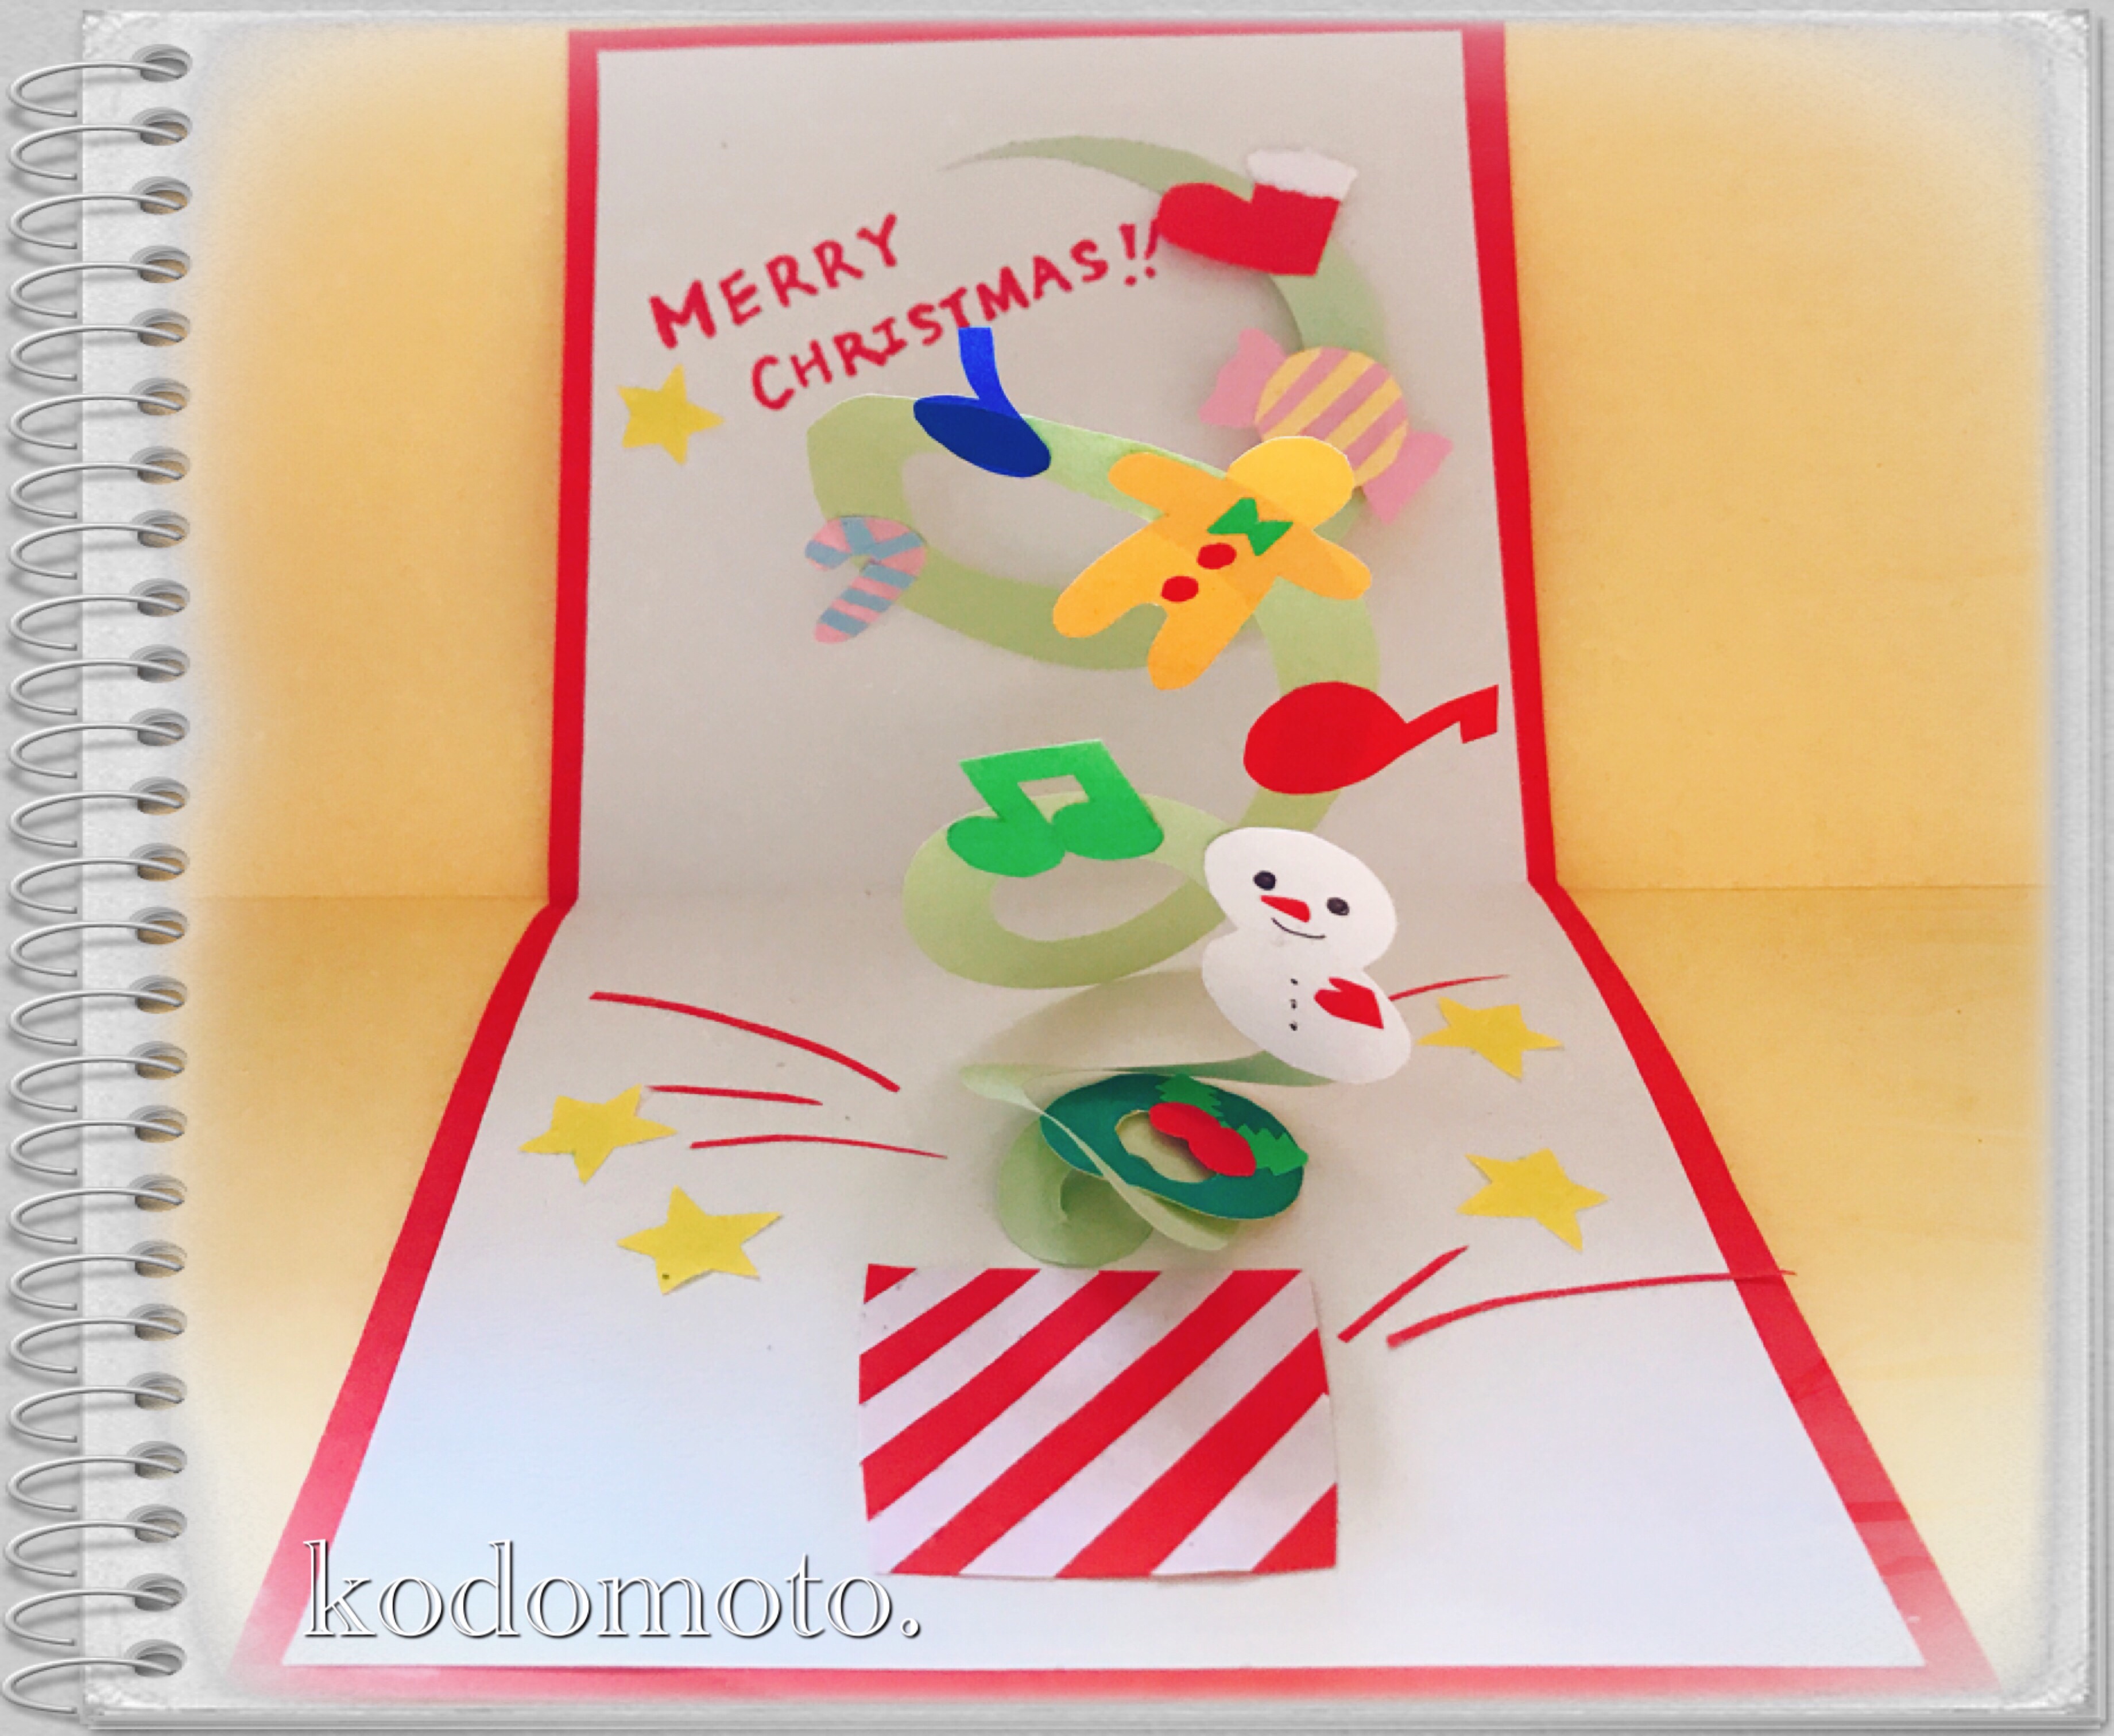 クリスマスカードの作り方 飛び出す仕掛けを簡単に可愛く Kodomoto